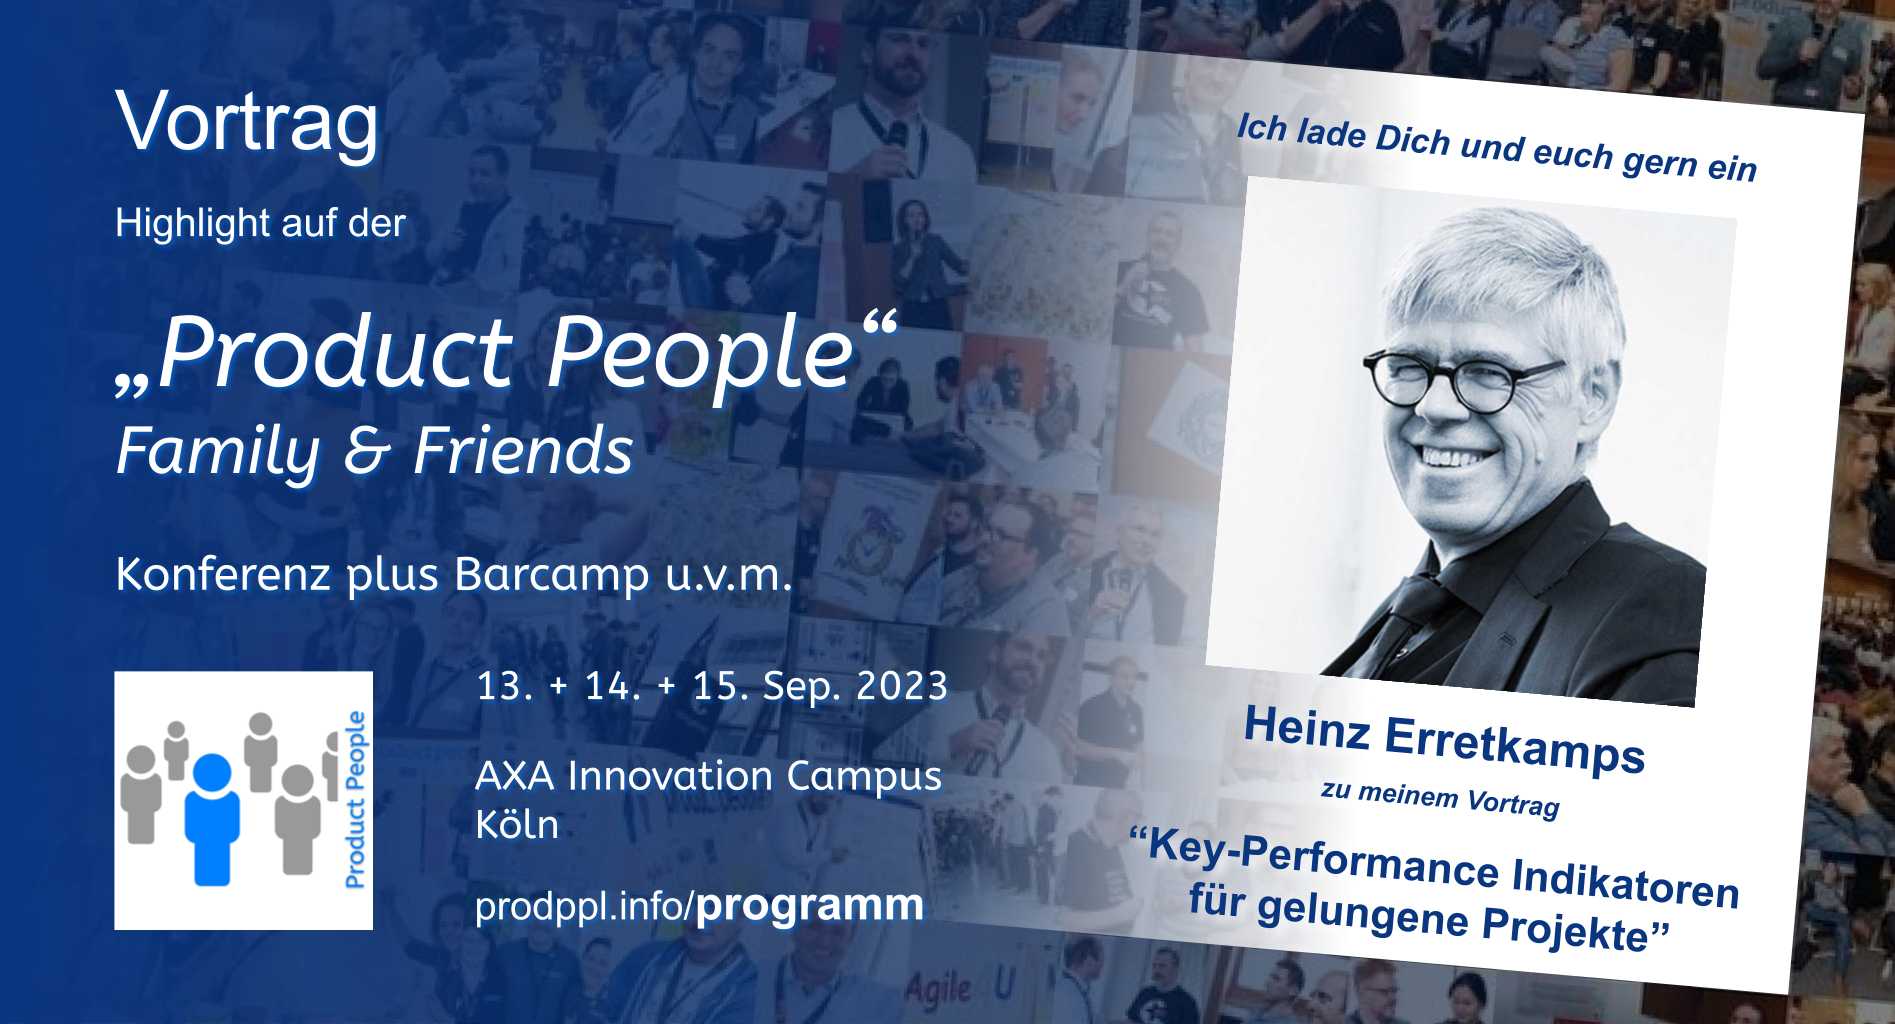 "Key-Performance Indikatoren für gelungene Projekte" - M-Vortrag von und mit Heinz Erretkamps - auf der 'Product People - Family & Friends' - Konferenz plus Barcamp - Köln 2023